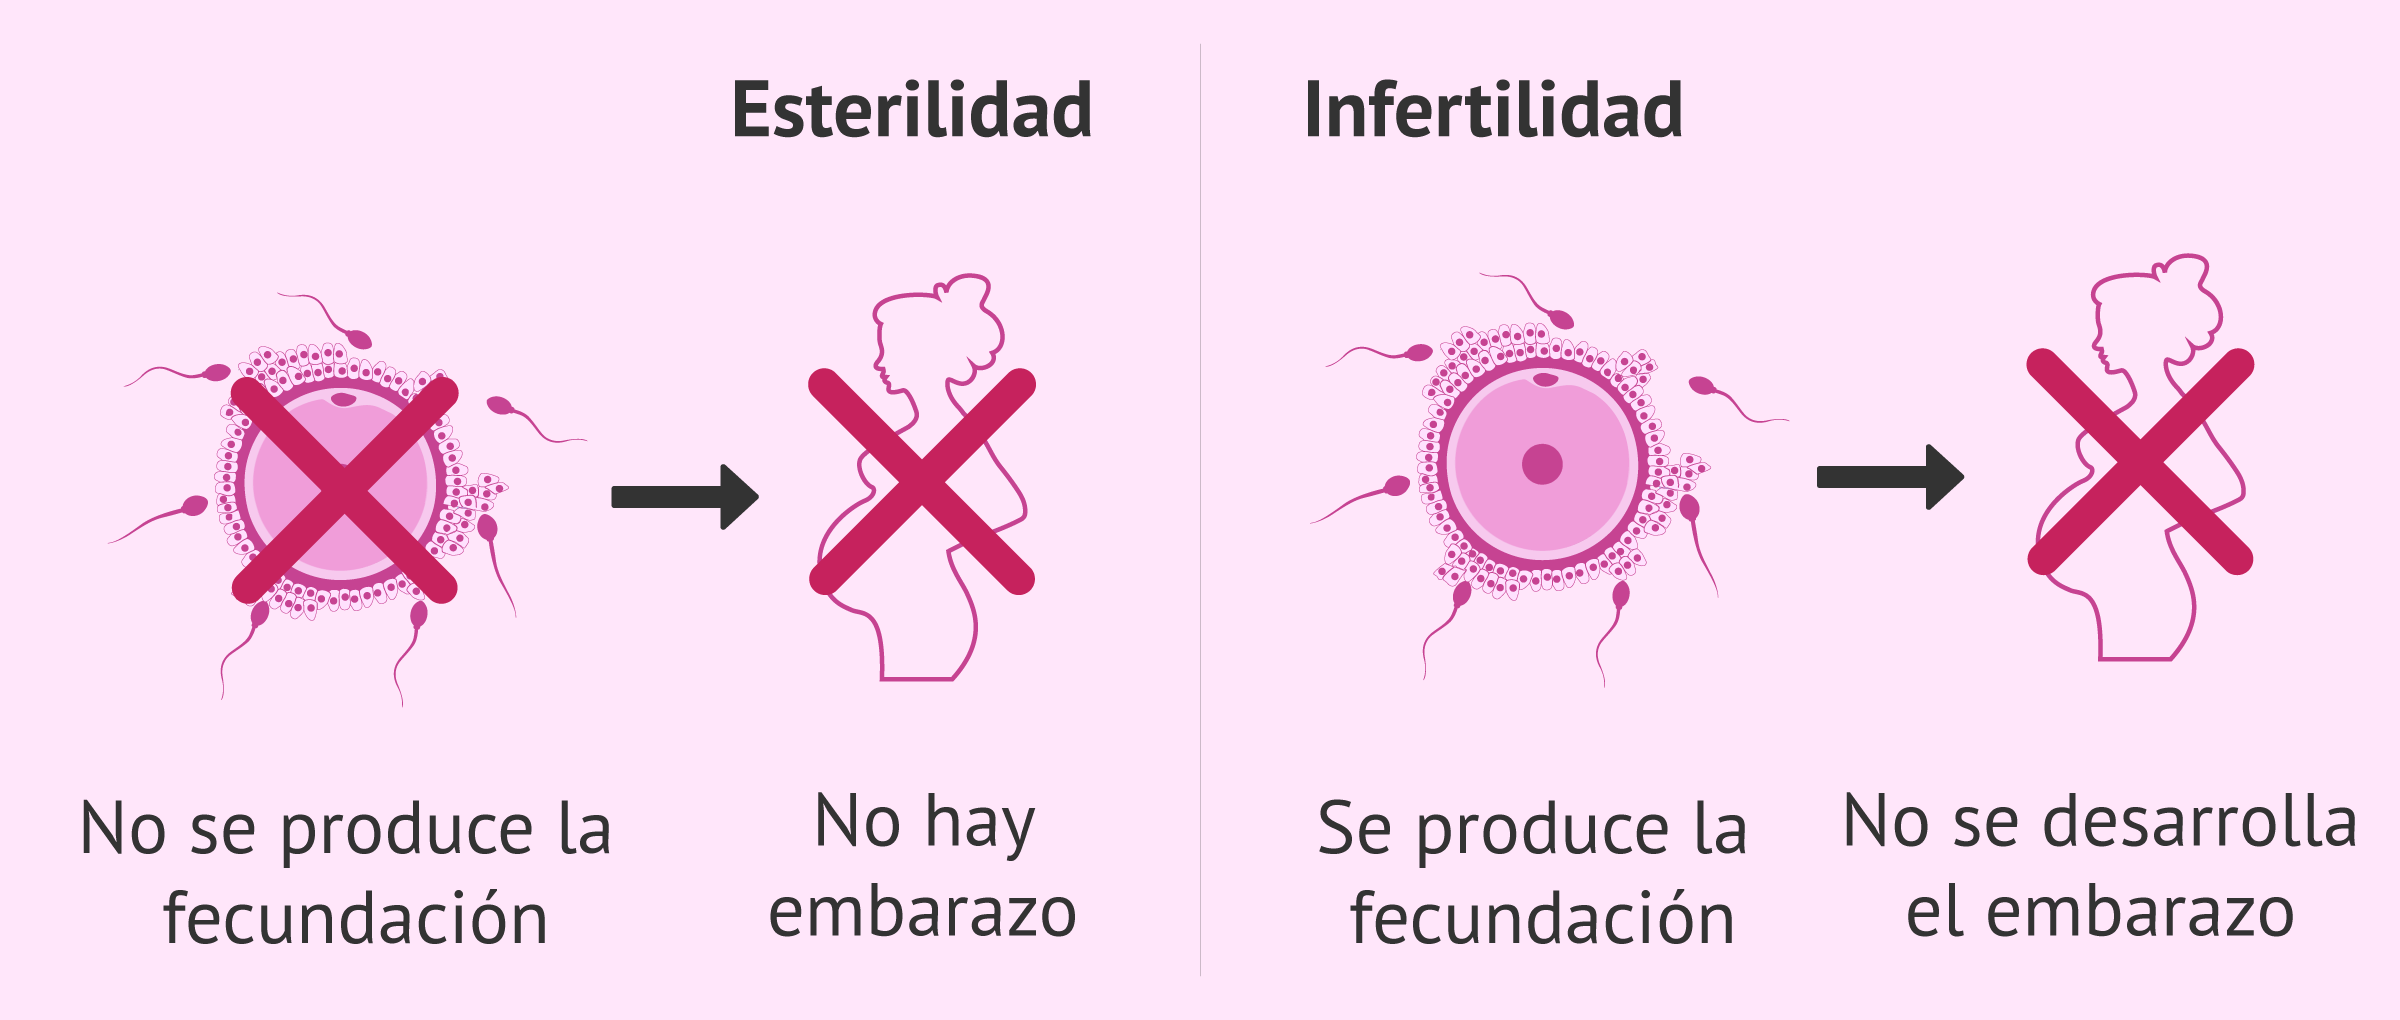 Diferencias entre esterilidad e infertilidad